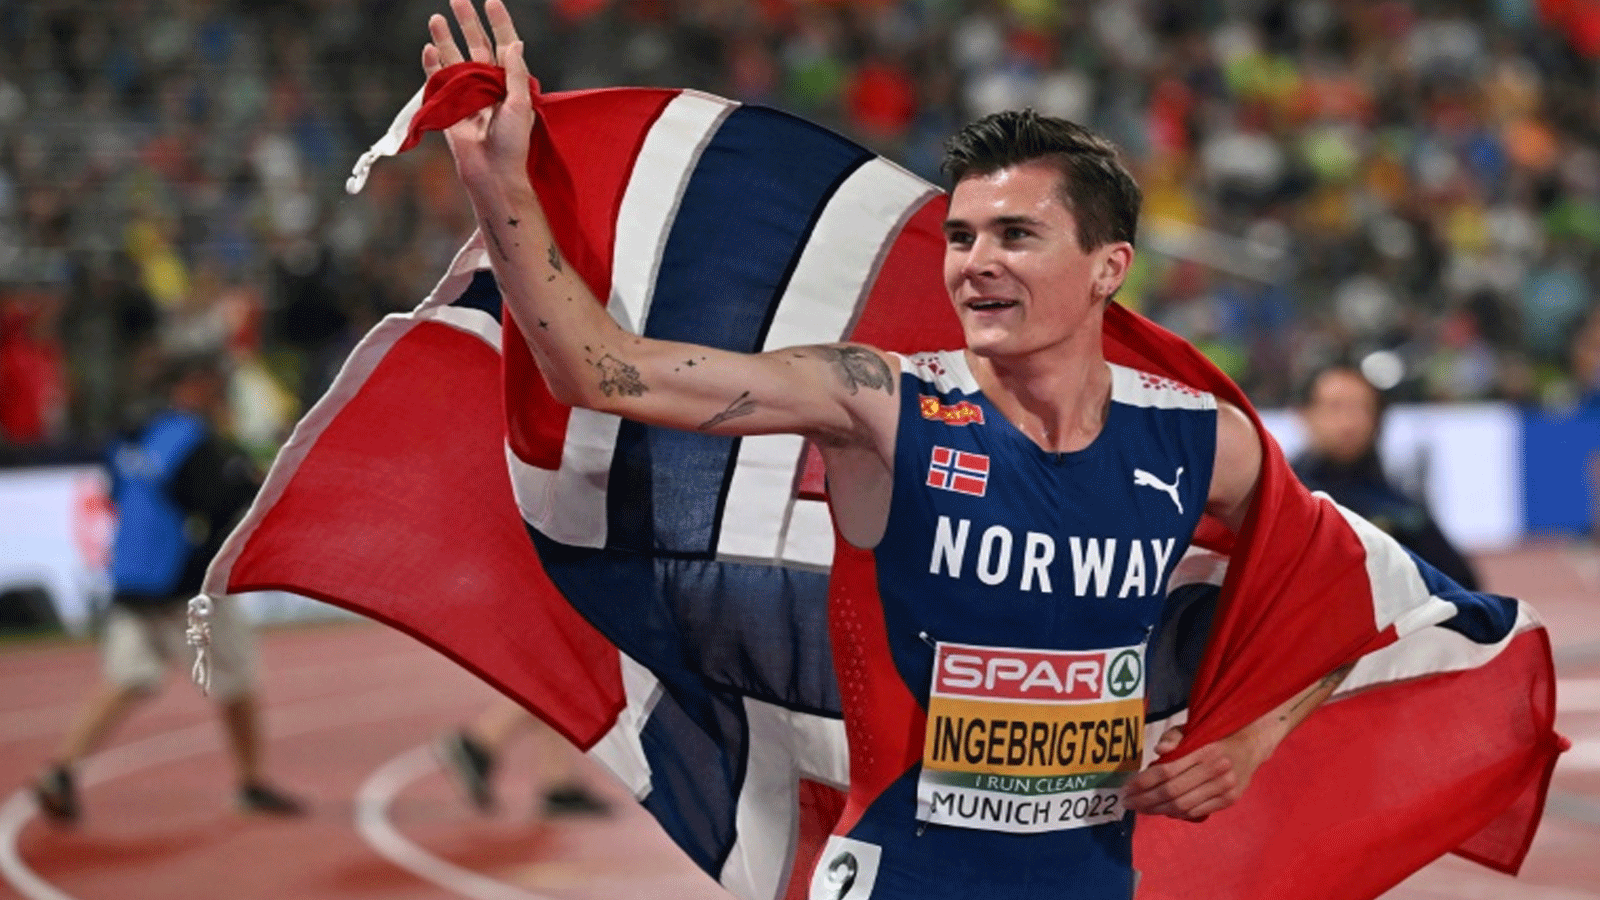 البطل الأولمبي النروجي جايكوب إينغبريغتسن يحتفظ بلقبه في سباق 1500 م خلال بطولة أوروبا لألعاب القوى المقامة في ميونيخ في 18 آب/أغسطس 2022